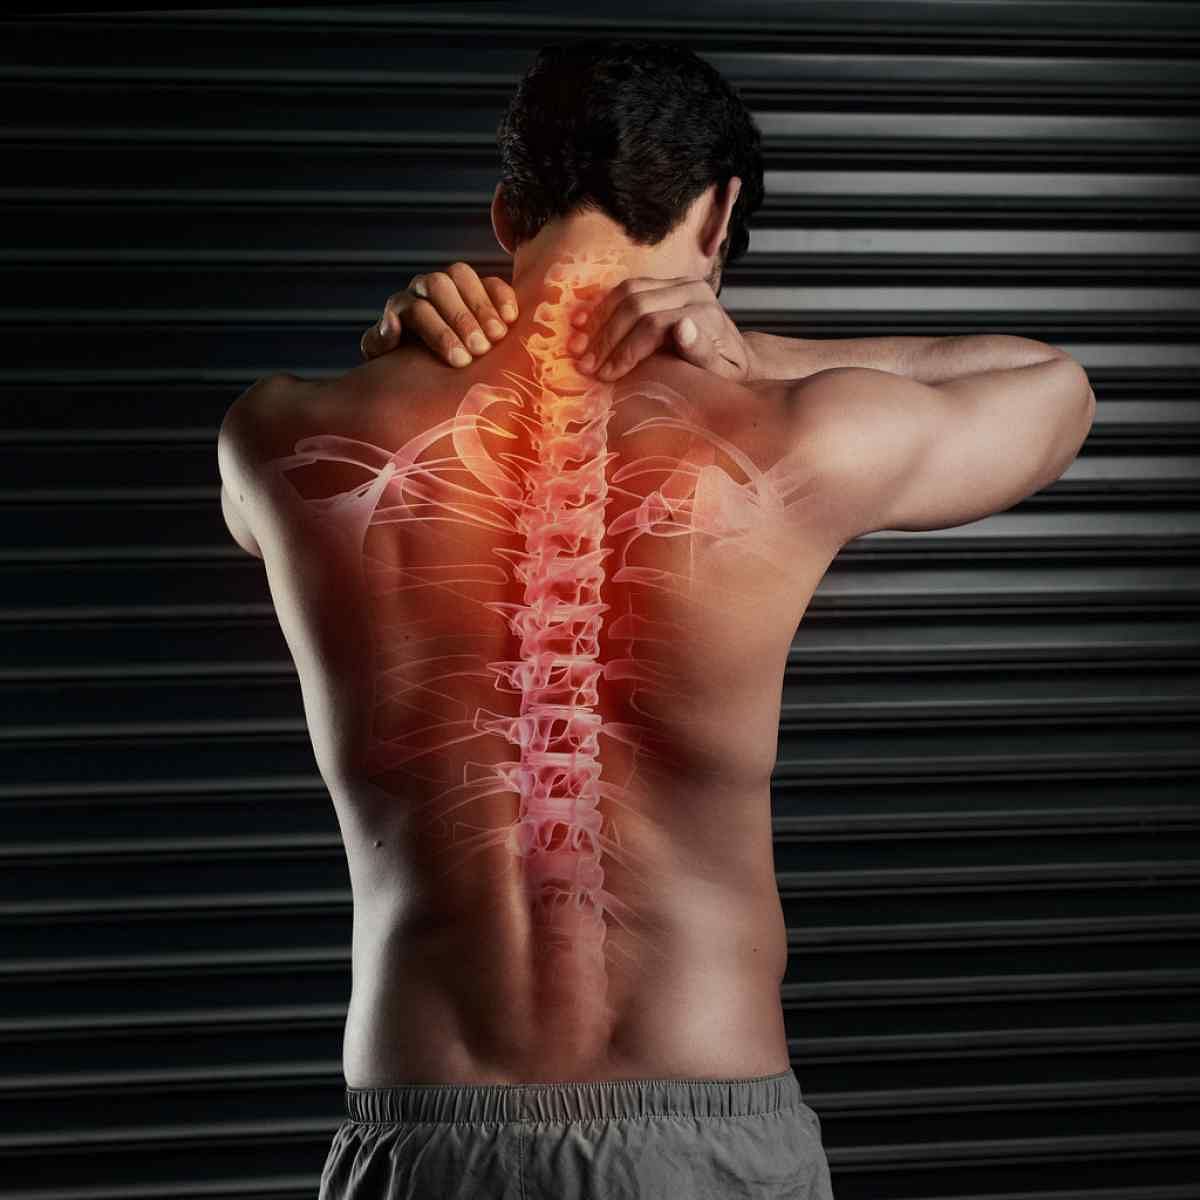 जानिए स्ट्रेस का आपकी हड्डियों और मांसपेशियों पर क्या असर पड़ता है.